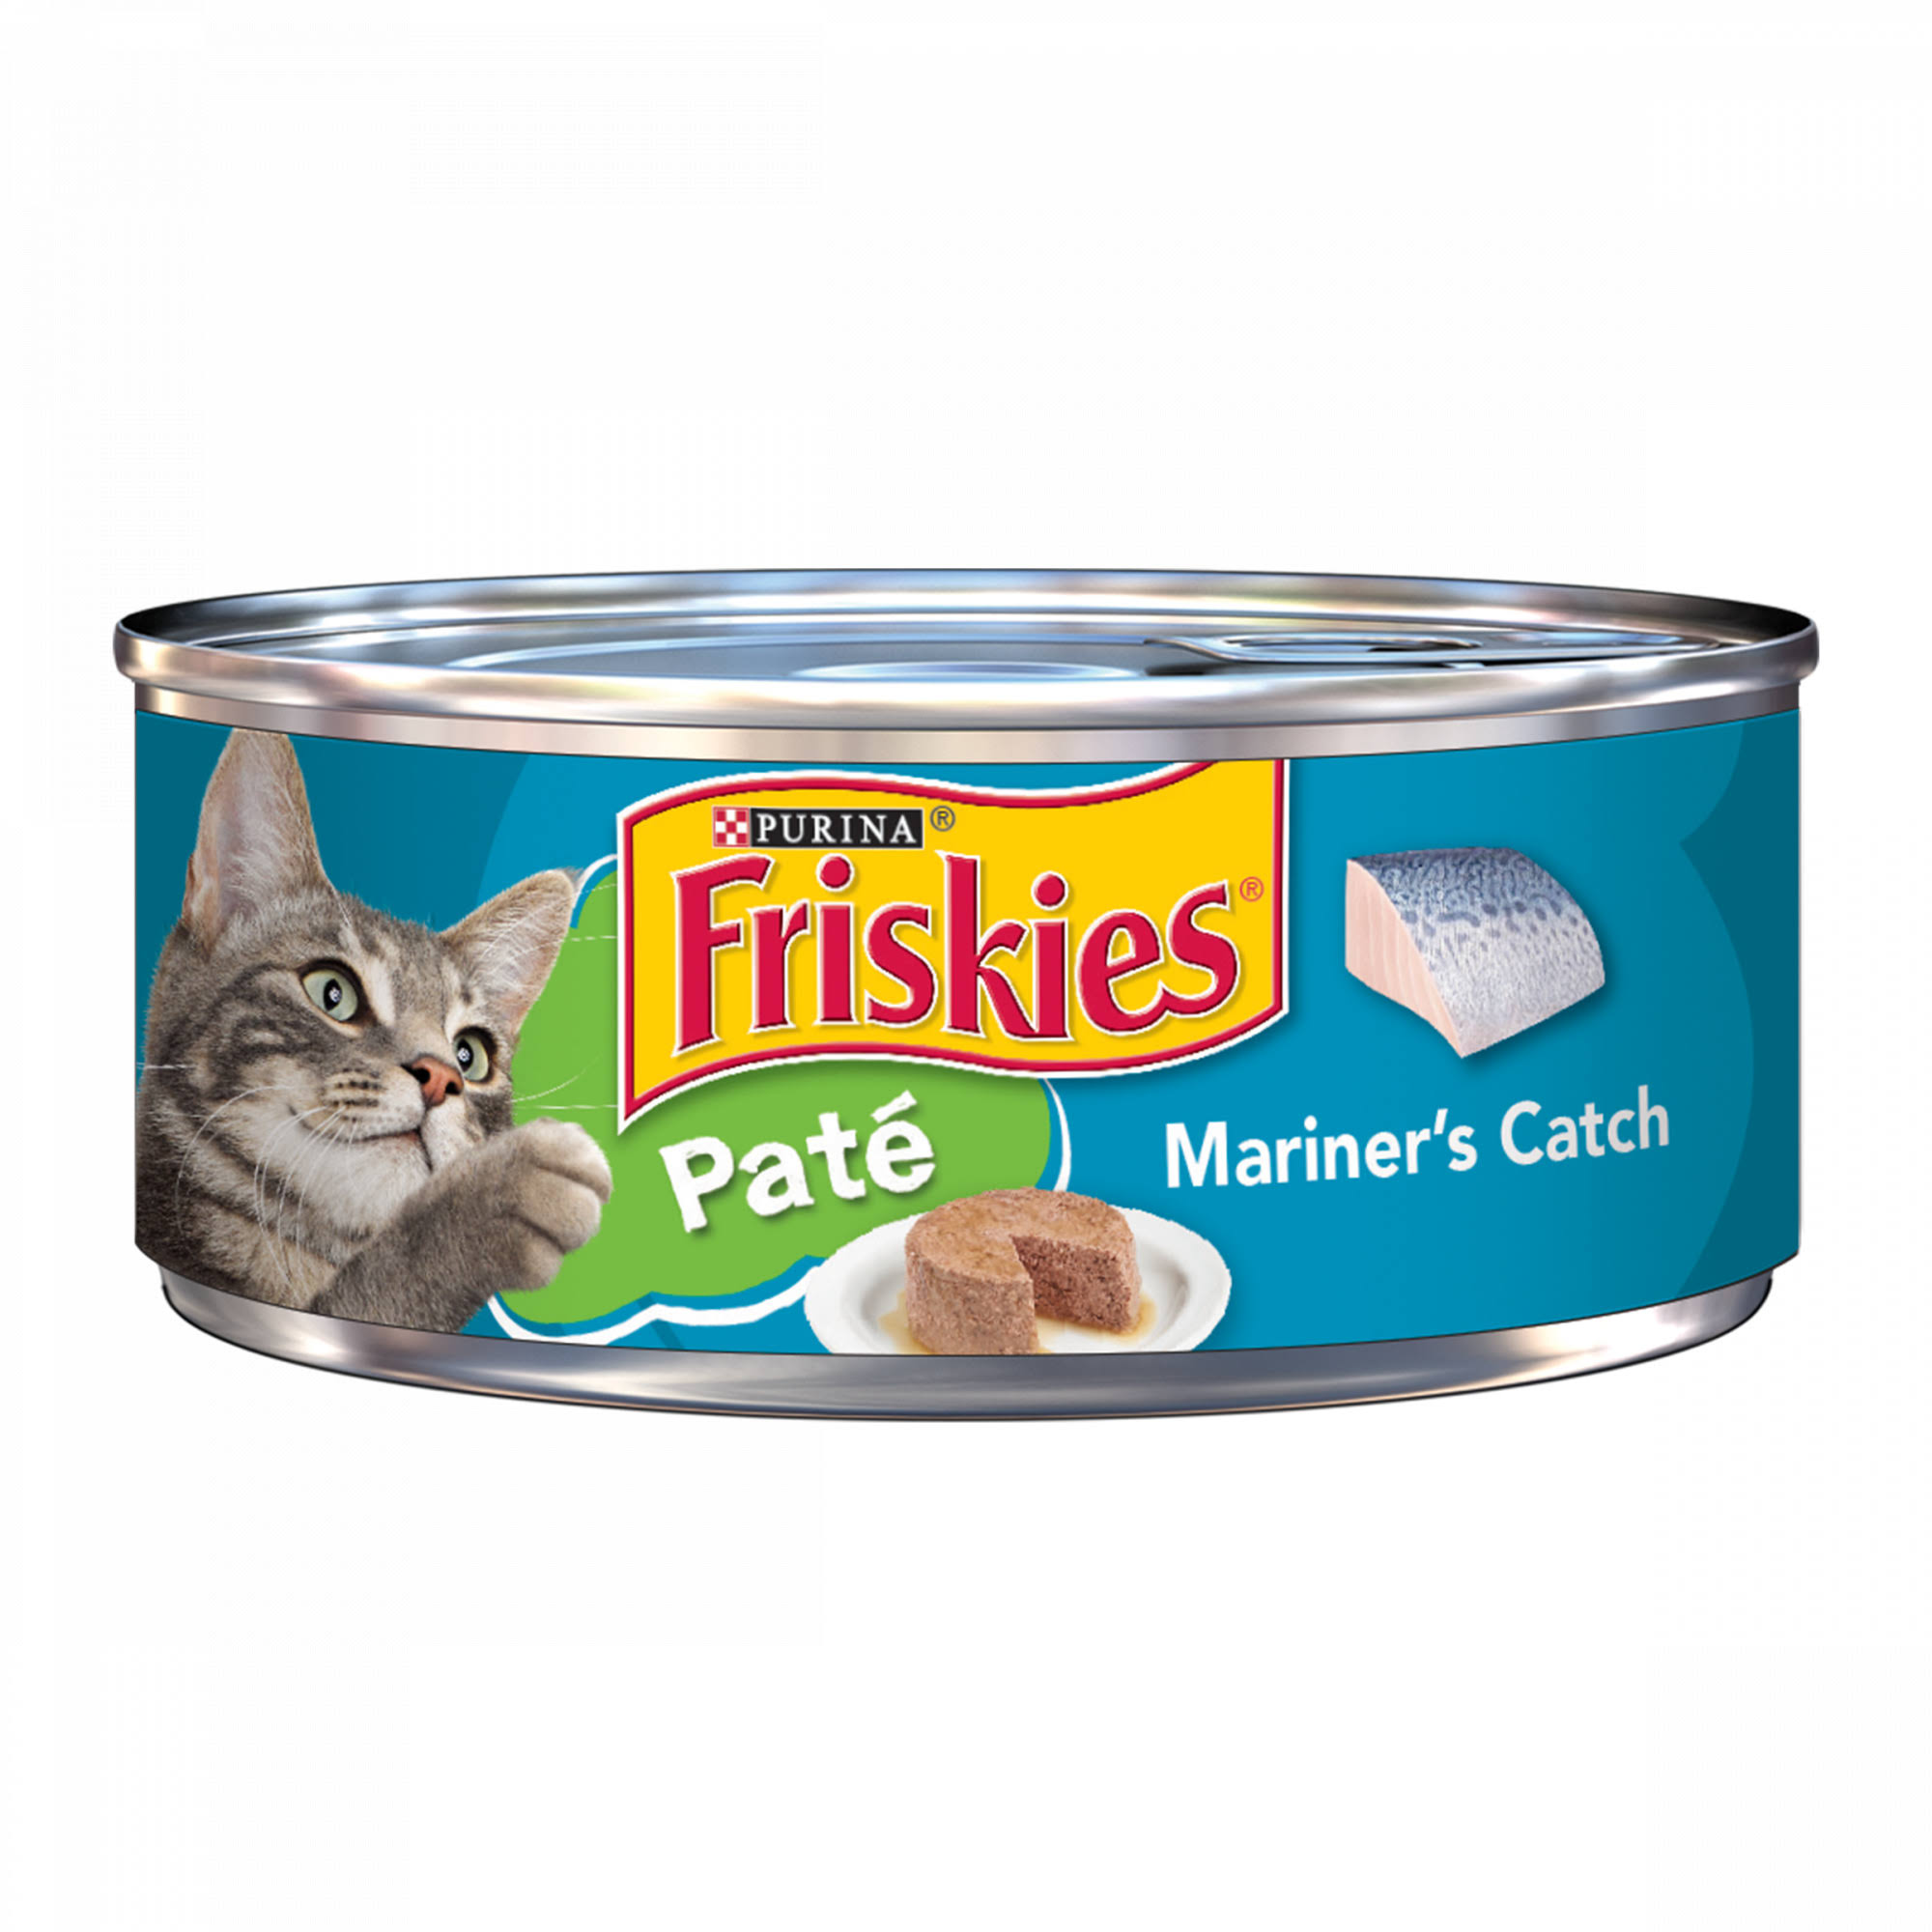 Friskies Classic Pate Cat Food - Mariner's Catch